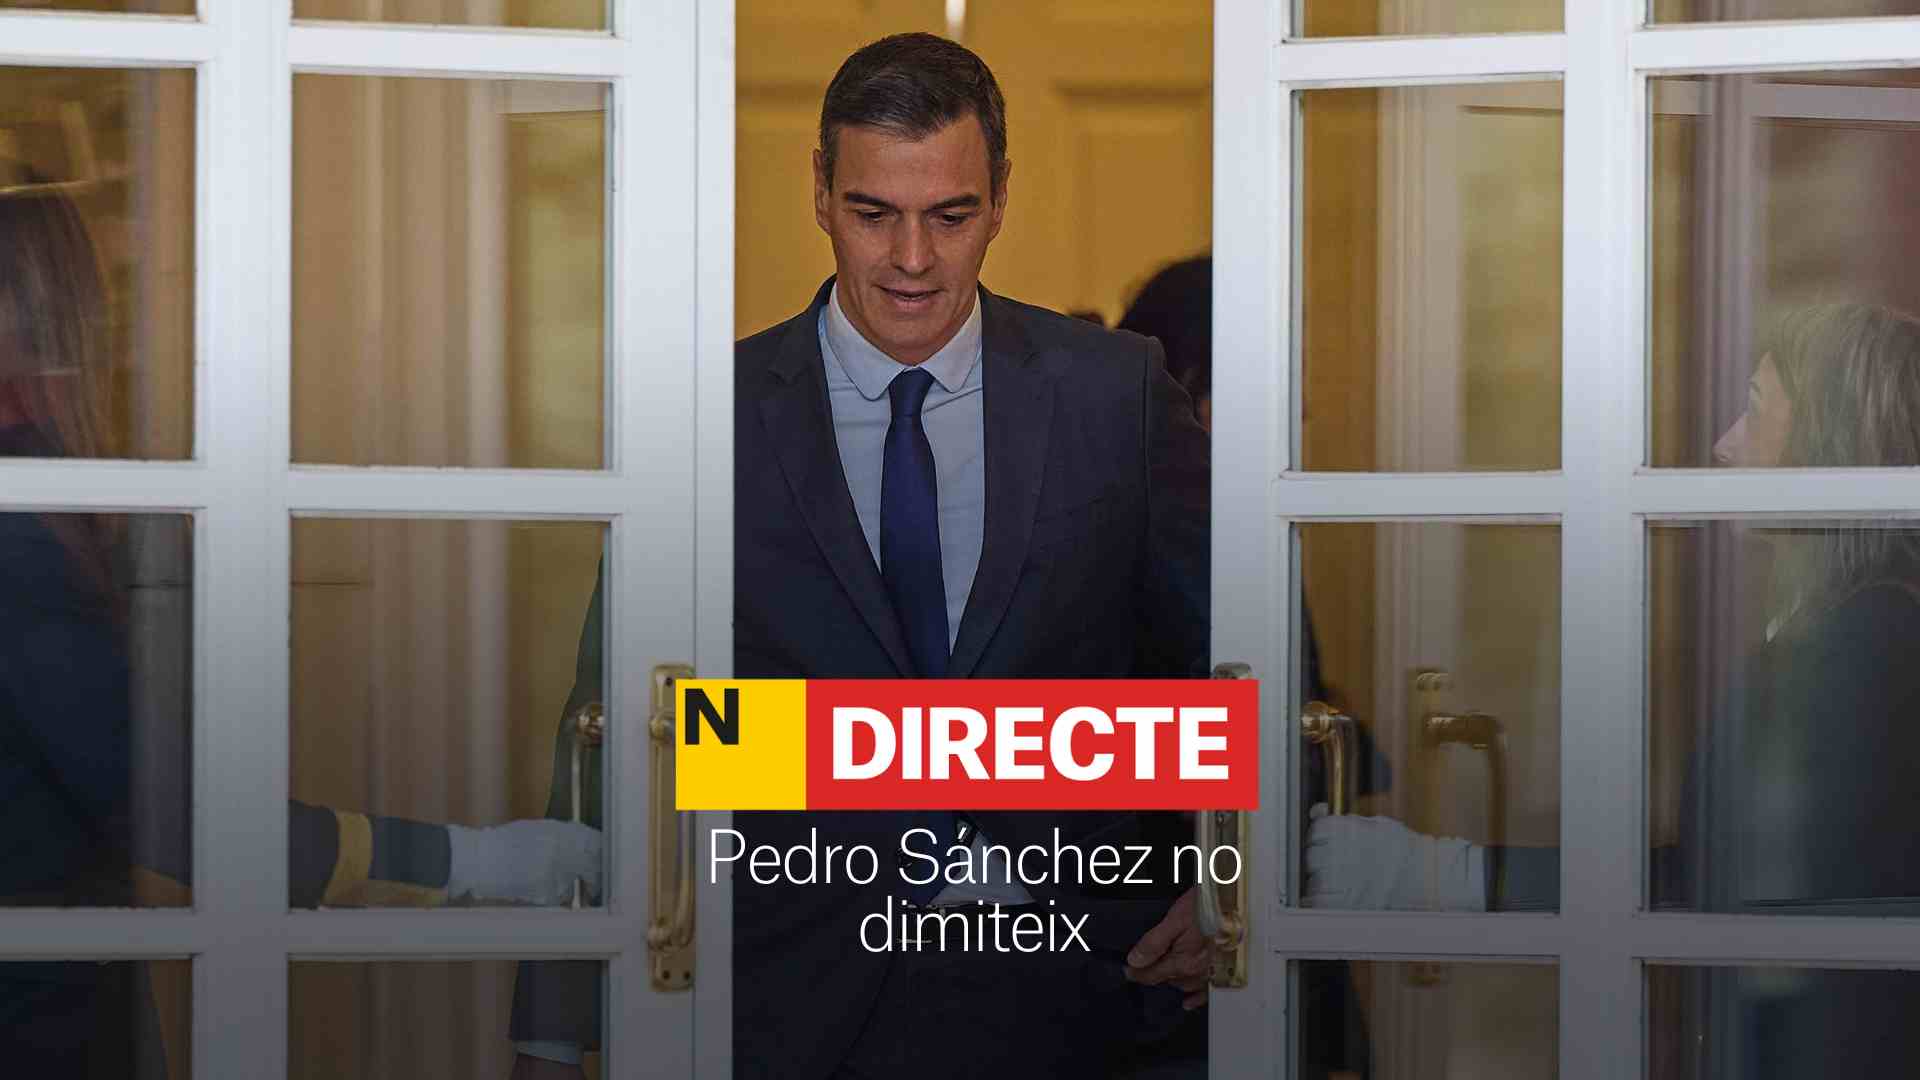 Pedro Sánchez no dimite, DIRECTO | Última hora del presidente del gobierno